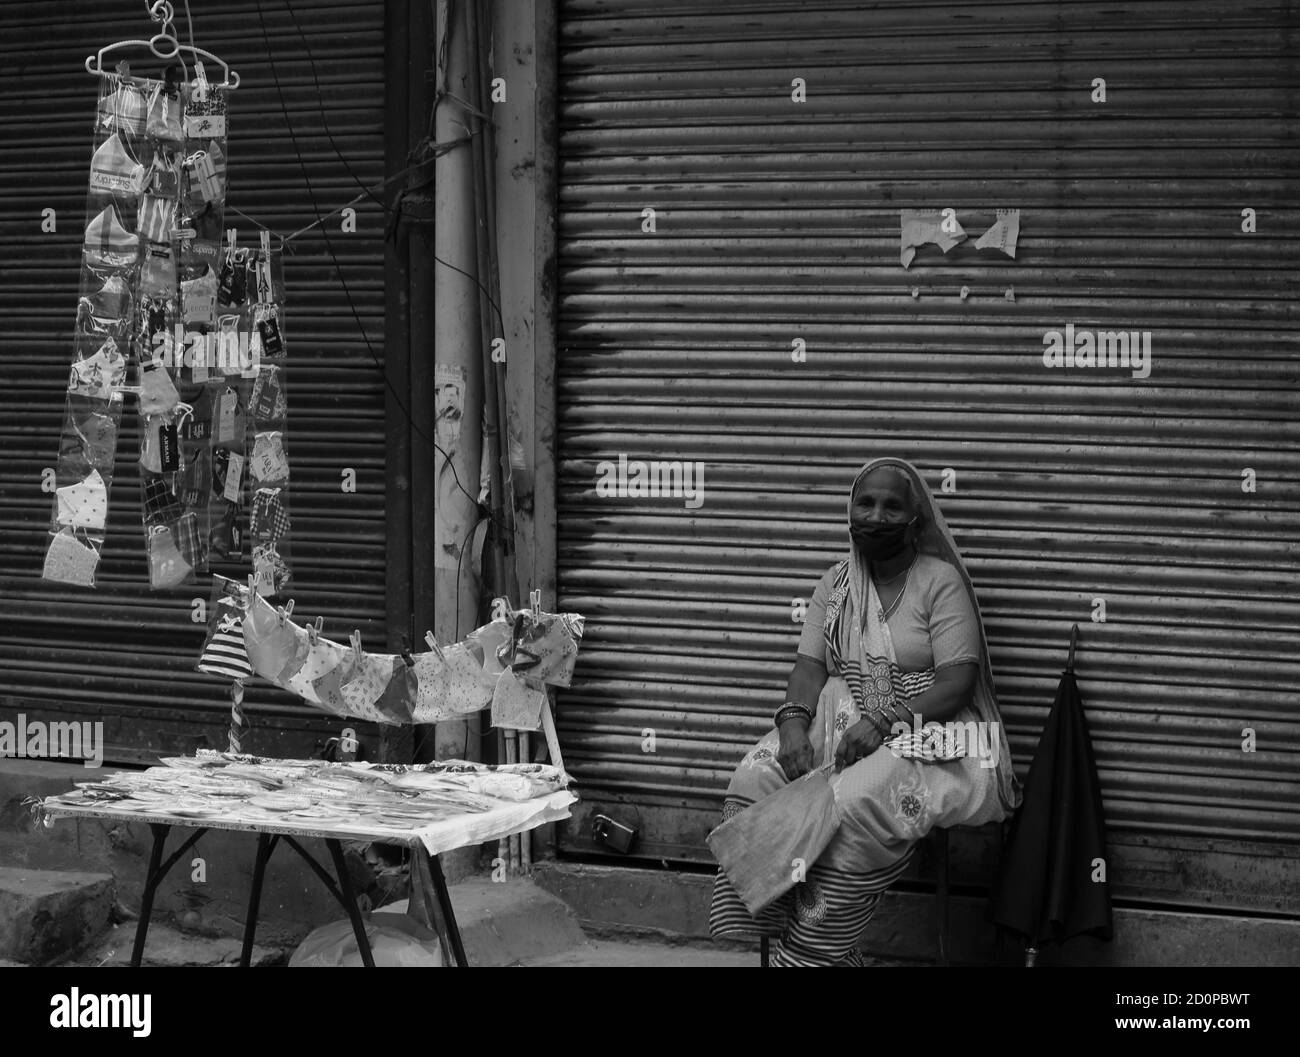 L'image en noir et blanc d'une vieille femme se vend Masques de subsistance après une pandémie en Inde Banque D'Images